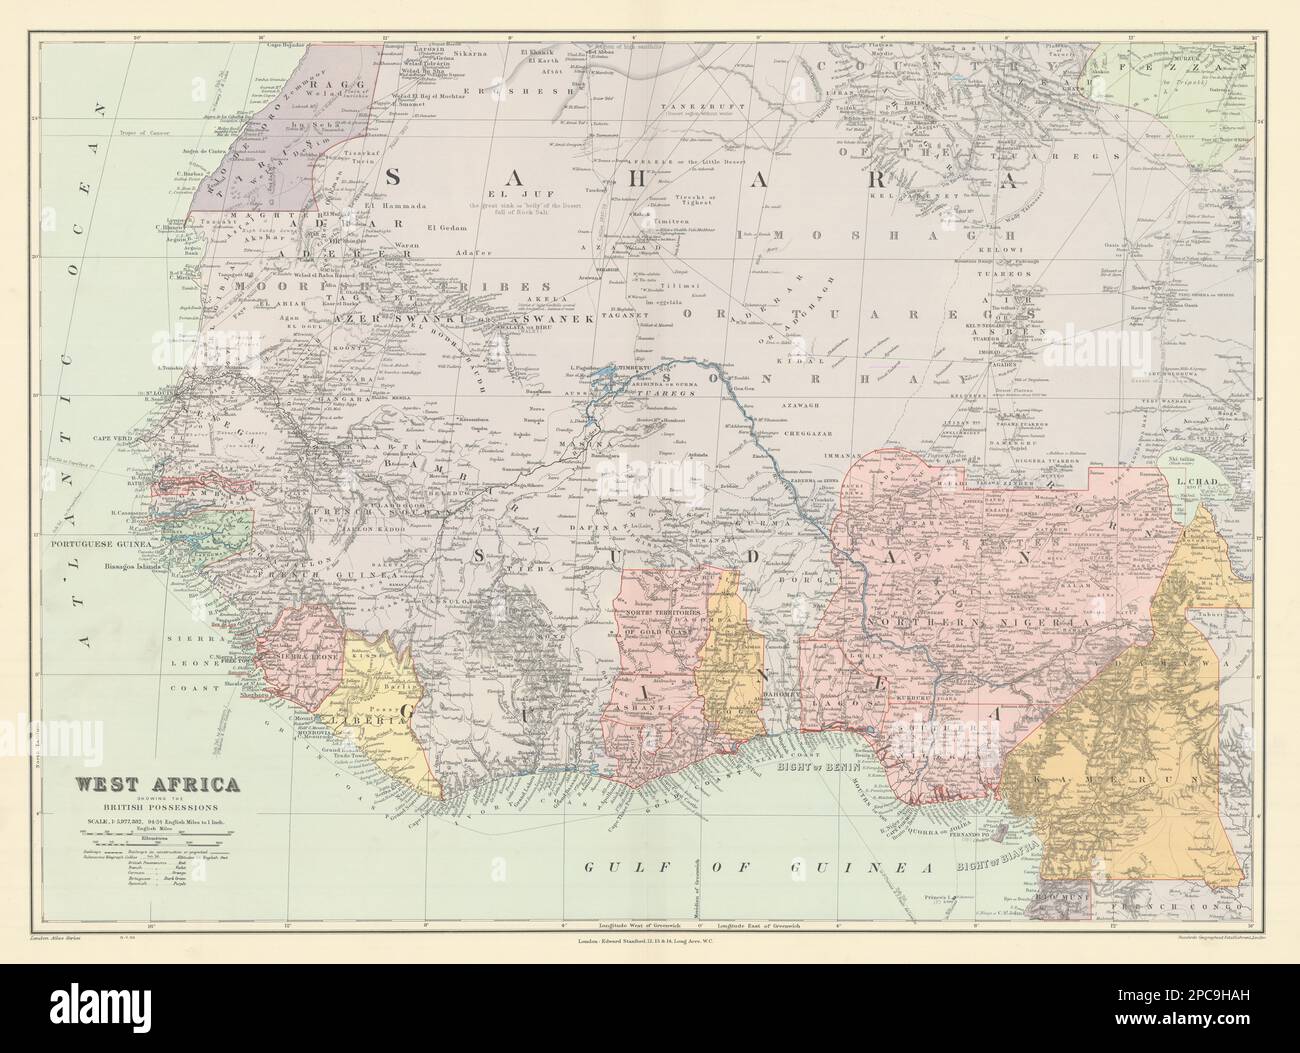 Westafrika zeigt britische Besitztümer. Nigeria Goldküste. STANFORD 1904 Karte Stockfoto